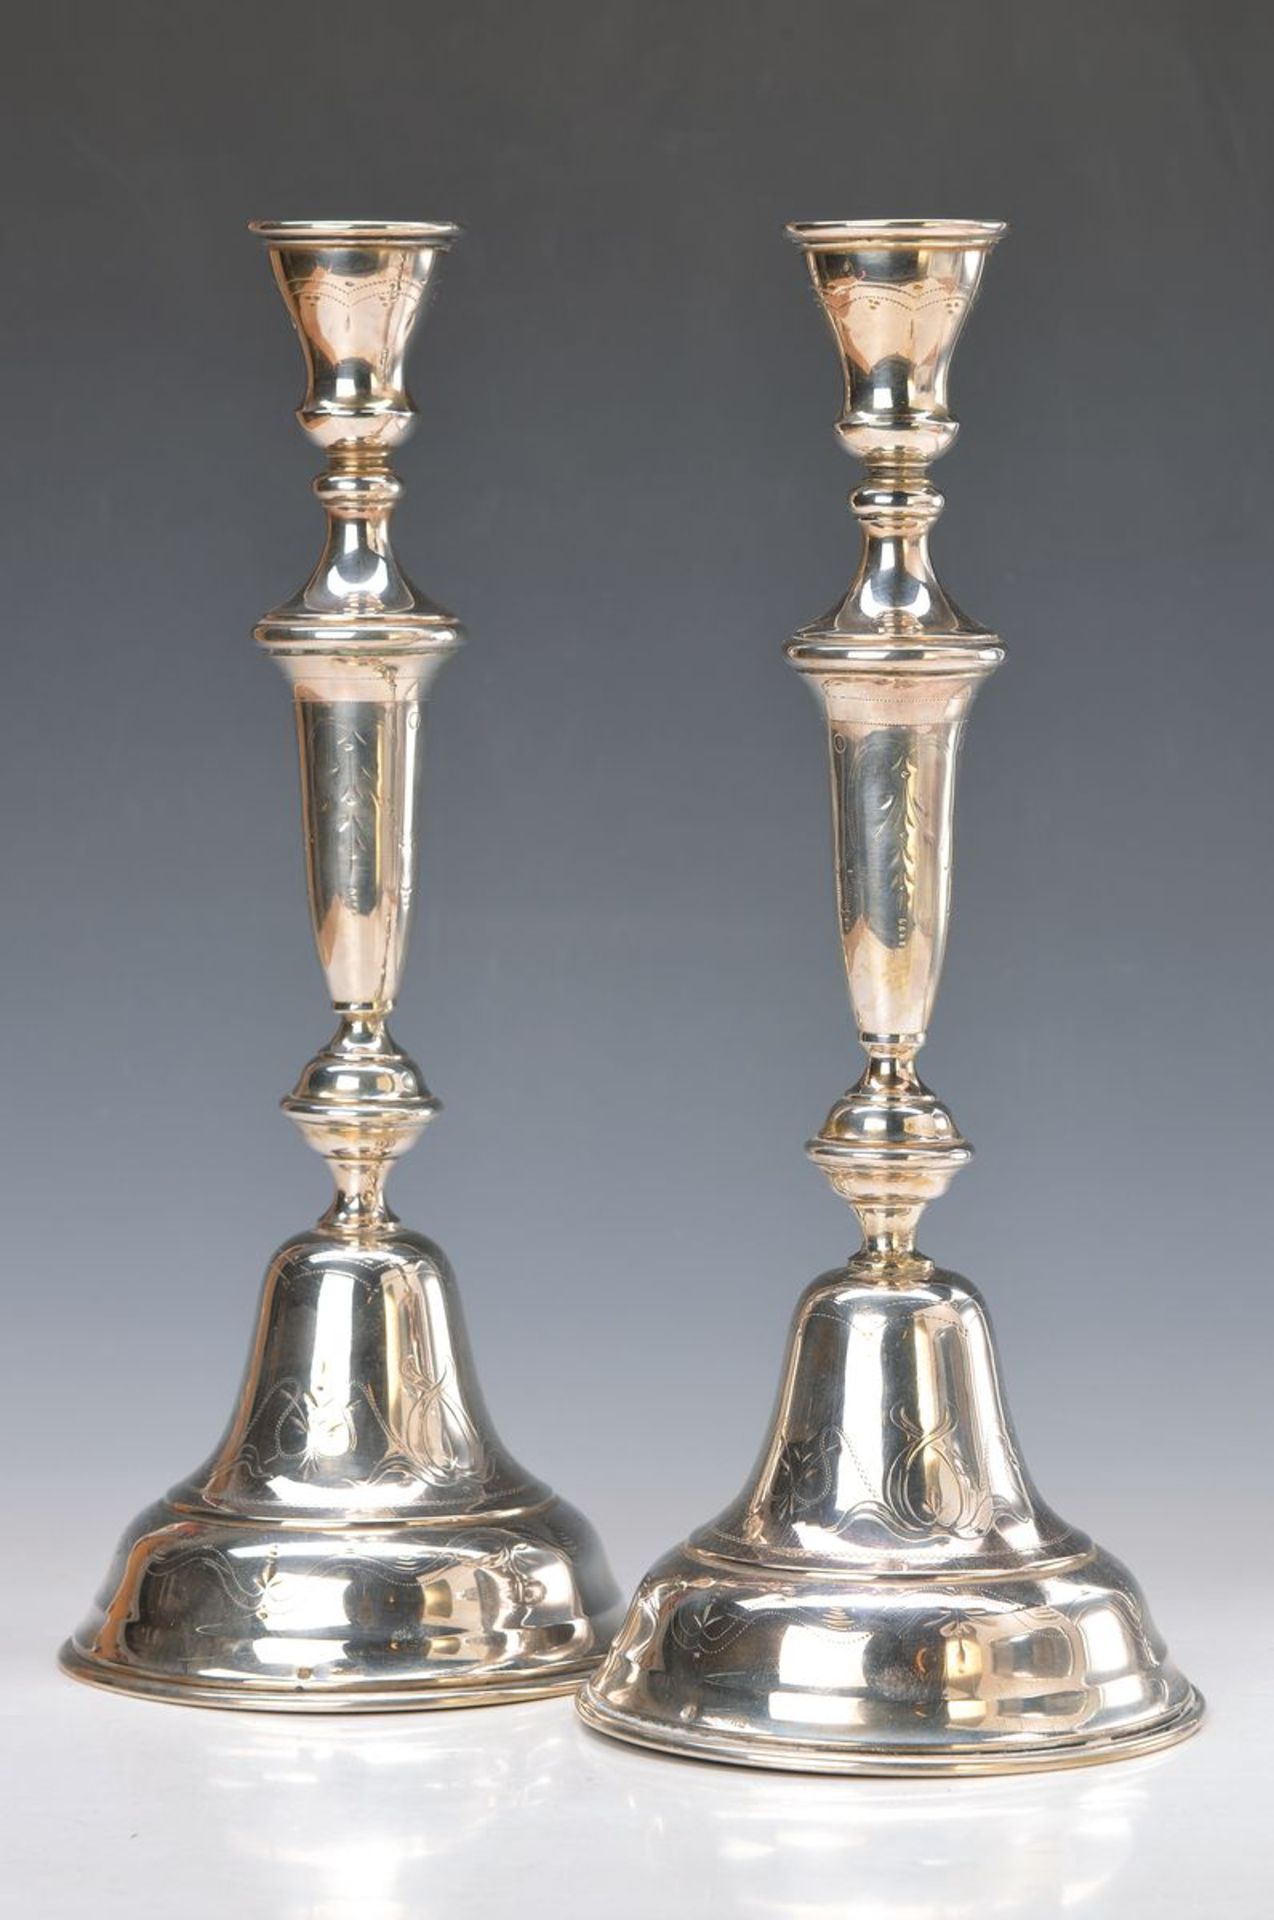 Paar Silber-Kerzenleuchter, Österreich, um 1890, gravierter Dekor, H. ca. 36.5 cm, leichte